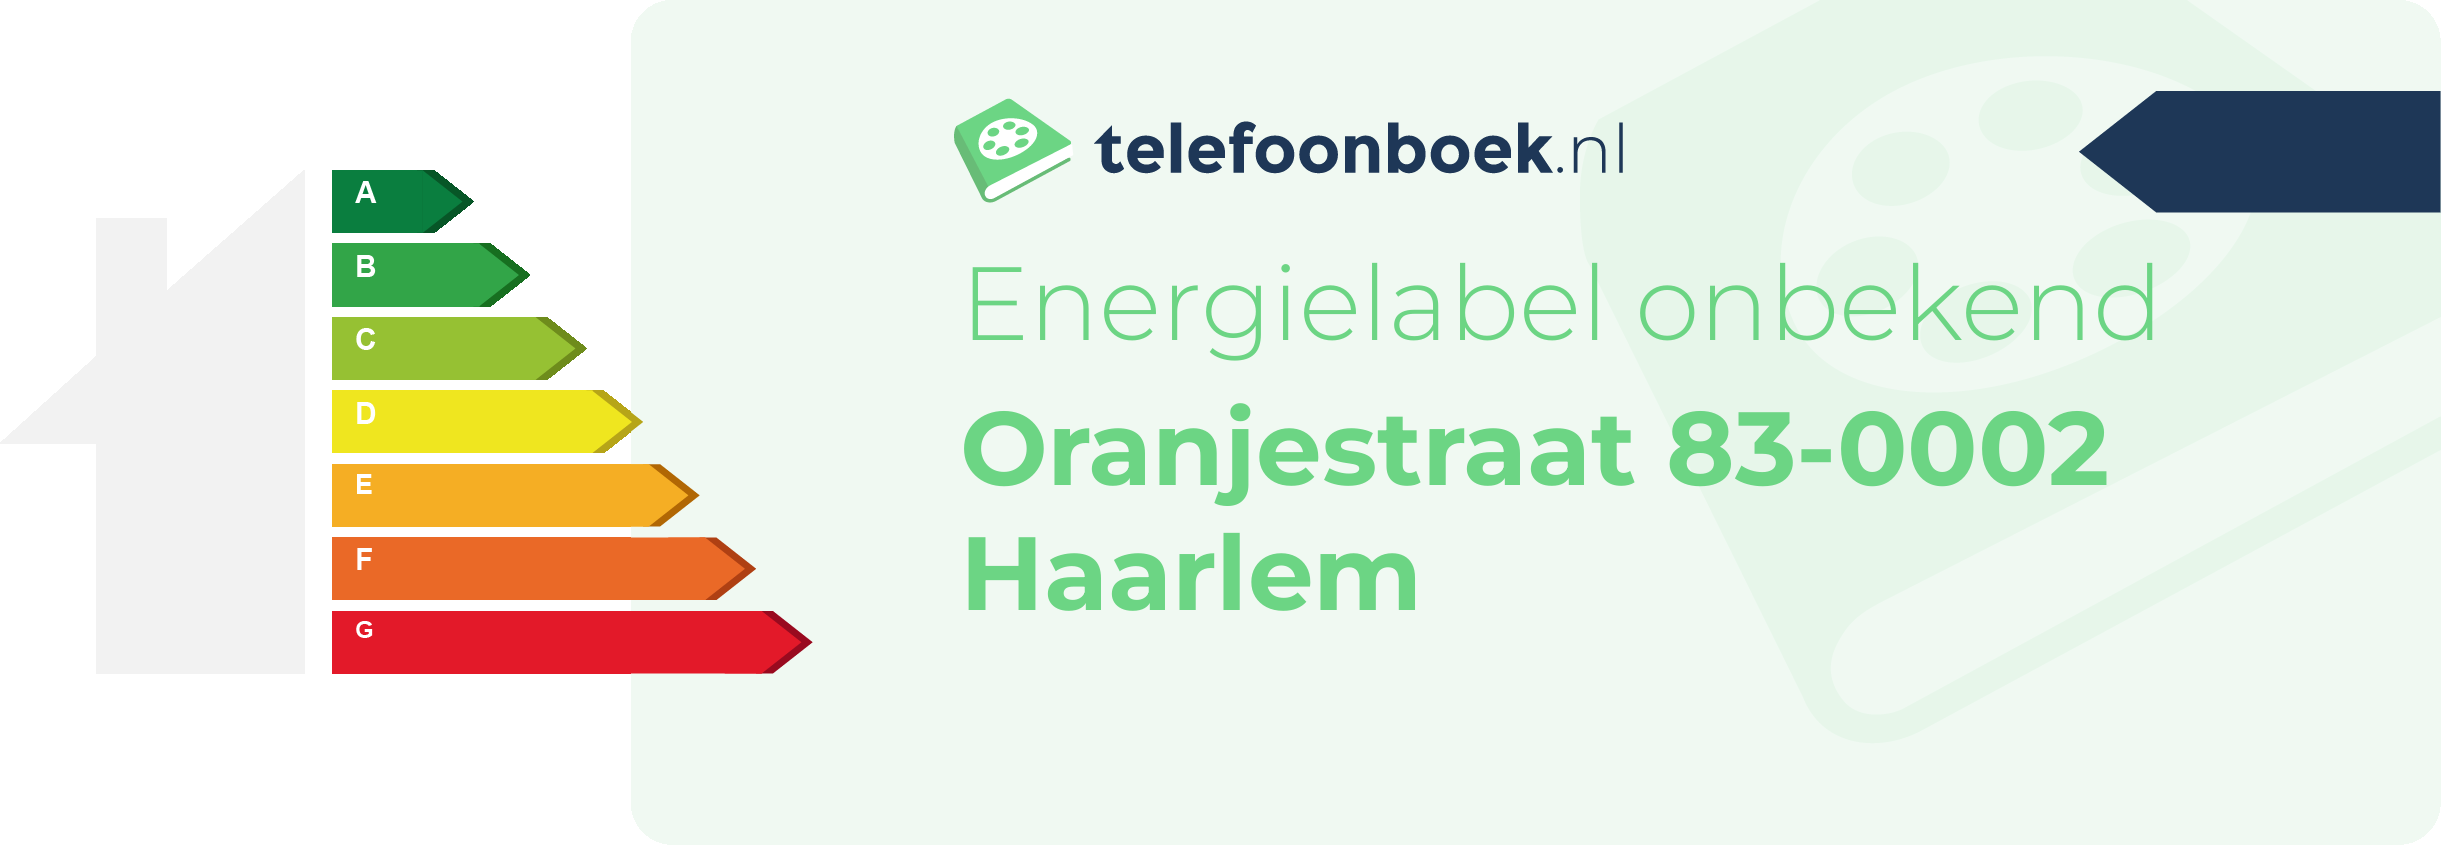 Energielabel Oranjestraat 83-0002 Haarlem